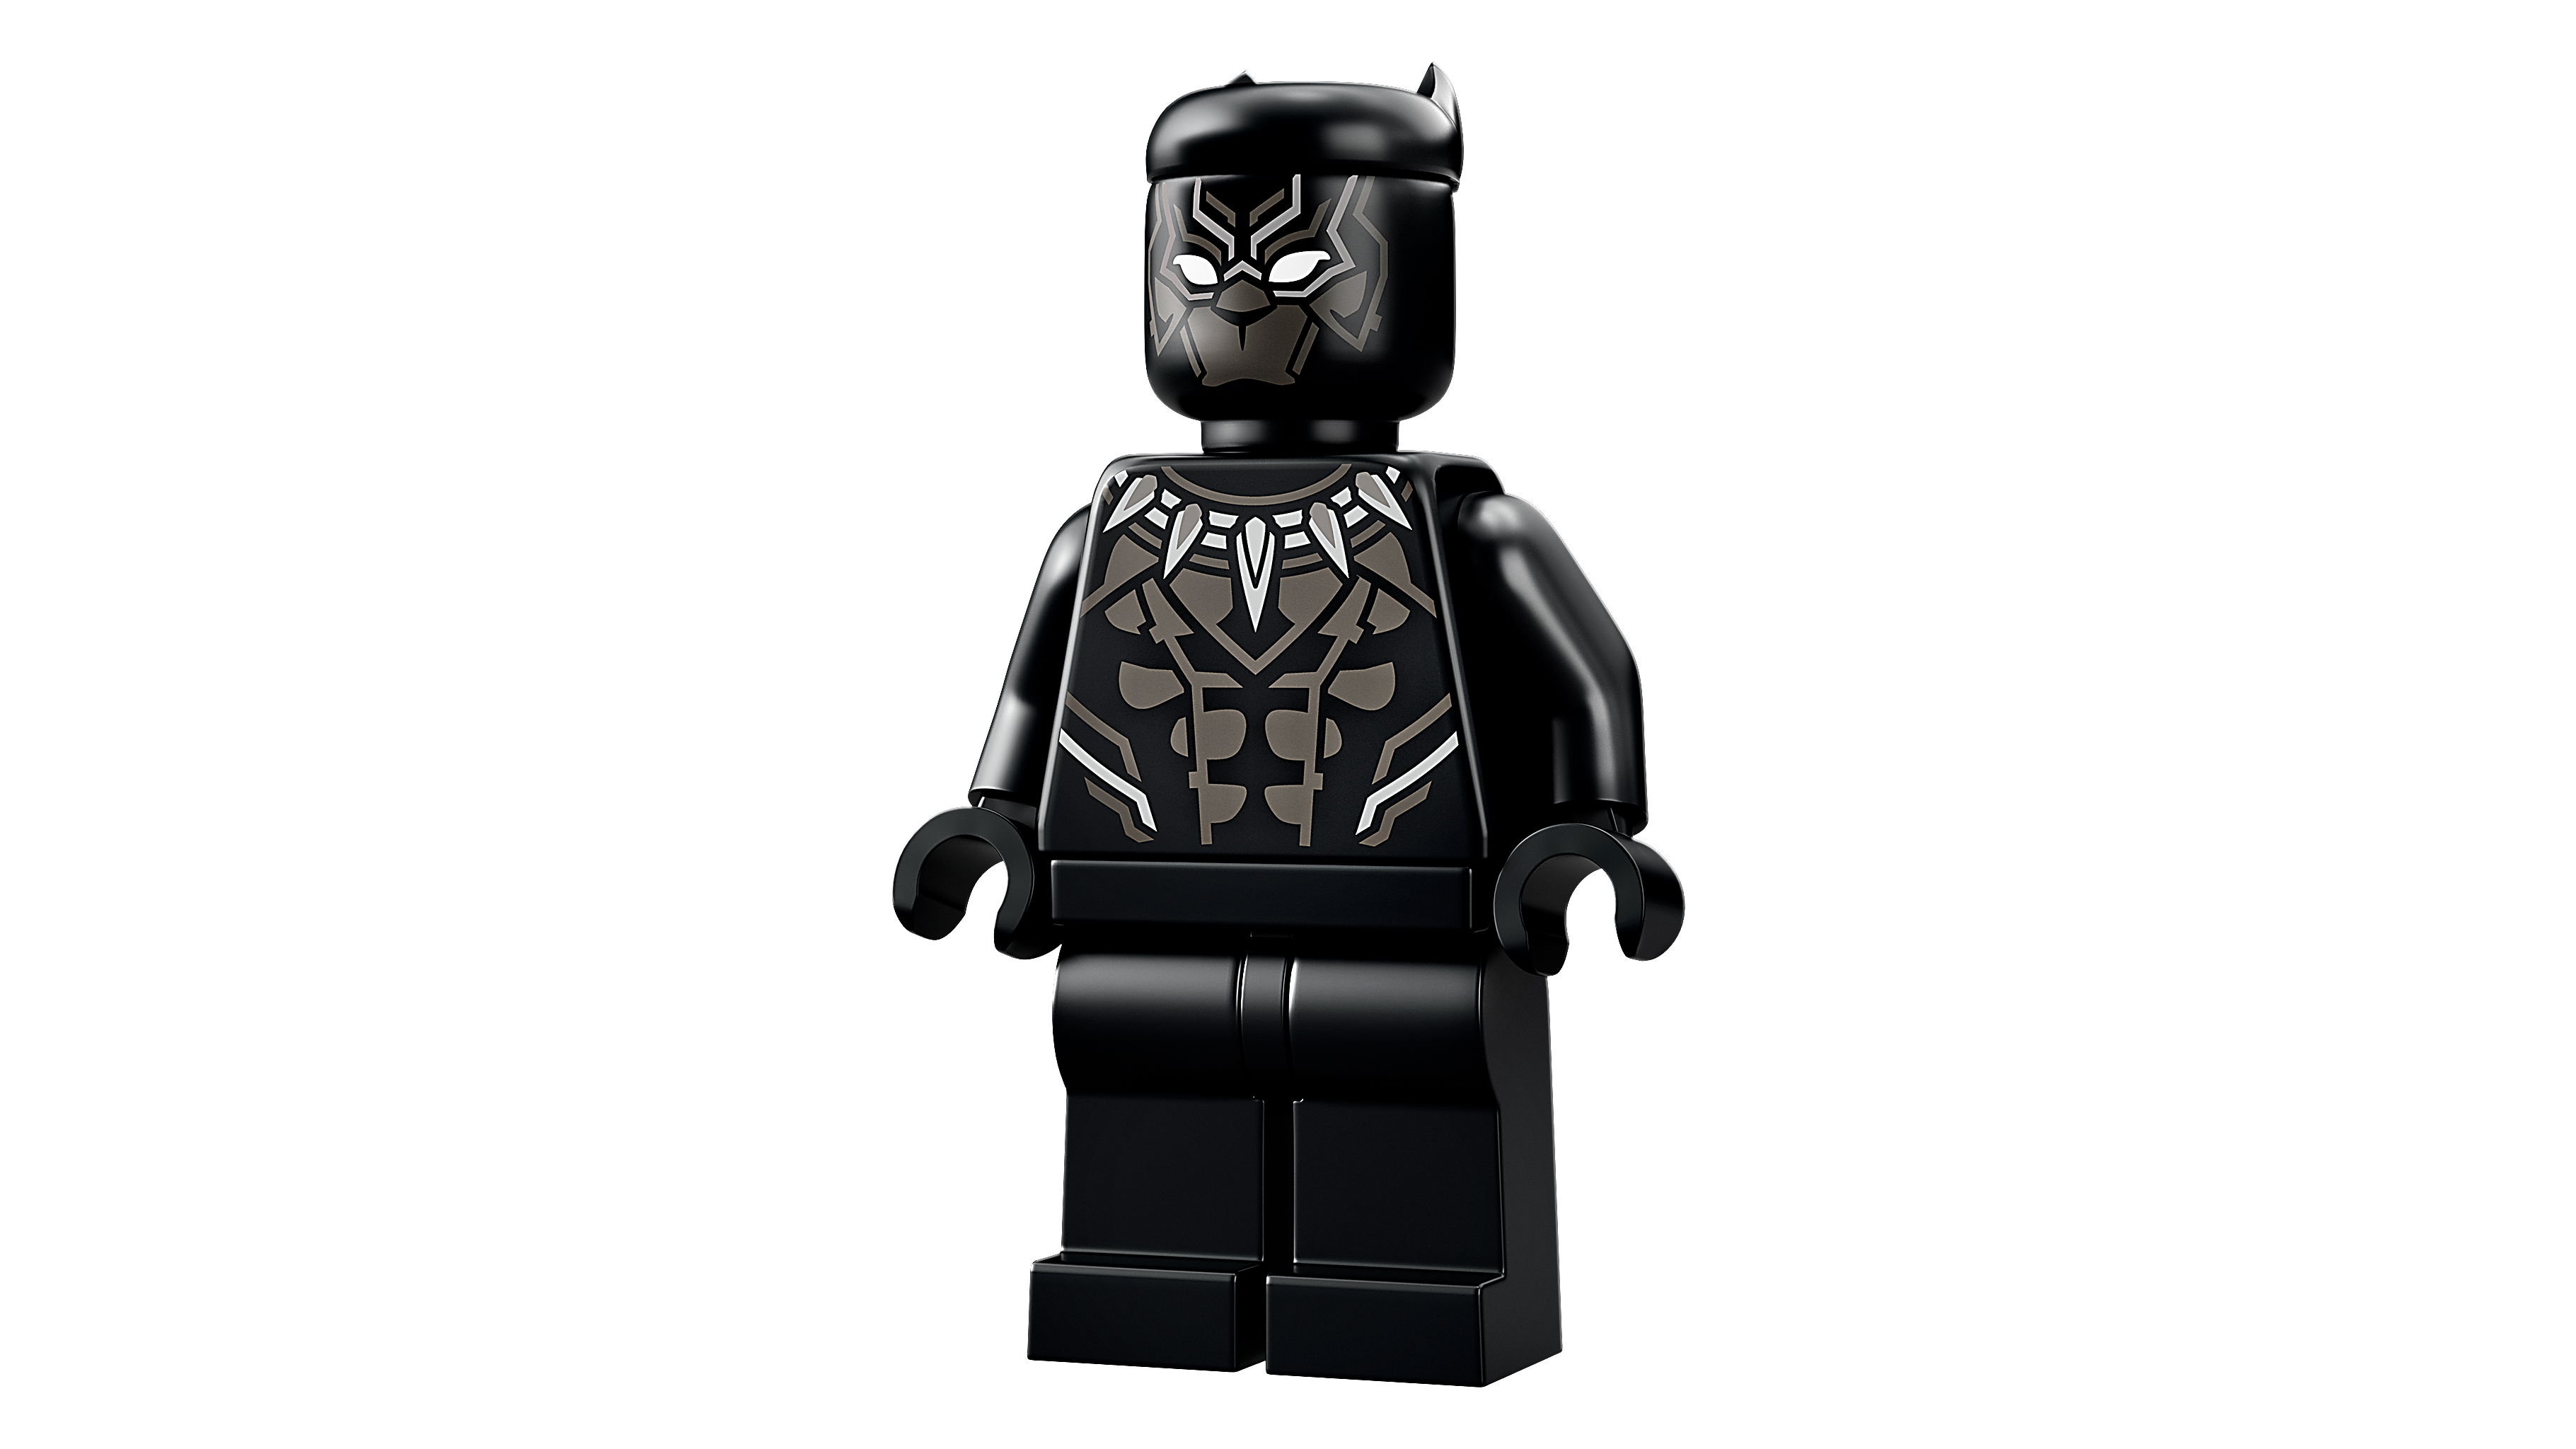 LEGO Marvel Black Panther